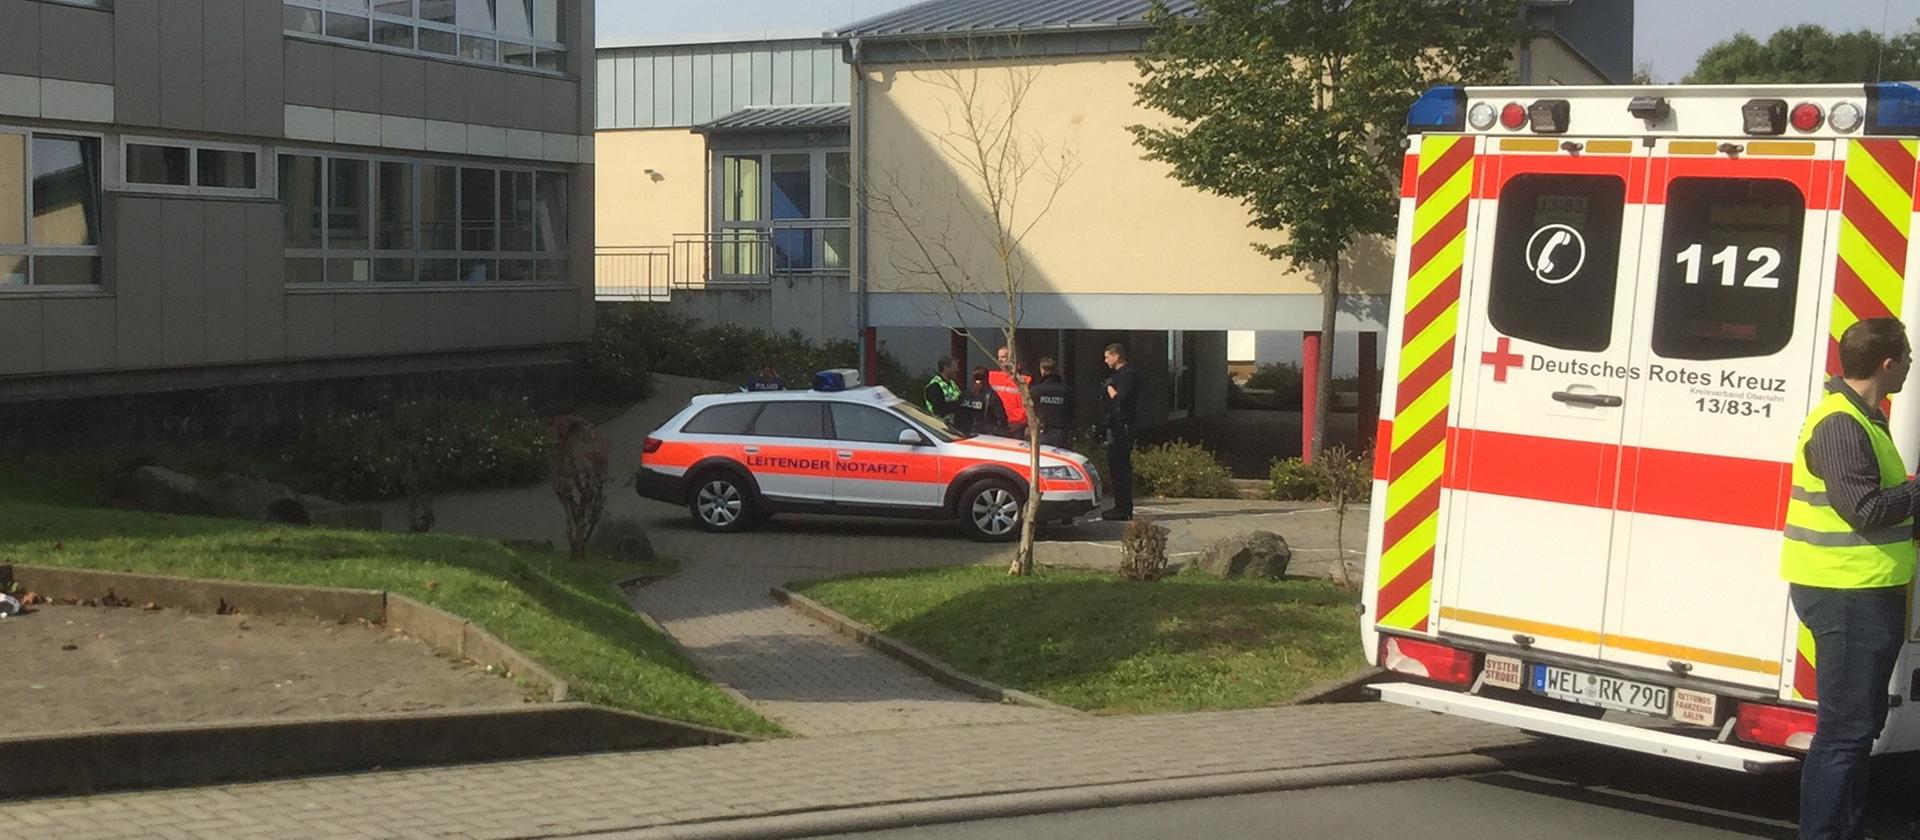 An der Schule in Runkel wurde Reizgas versprüht, mehrere Schüler wurden verletzt - © Klaus-Dieter Häring